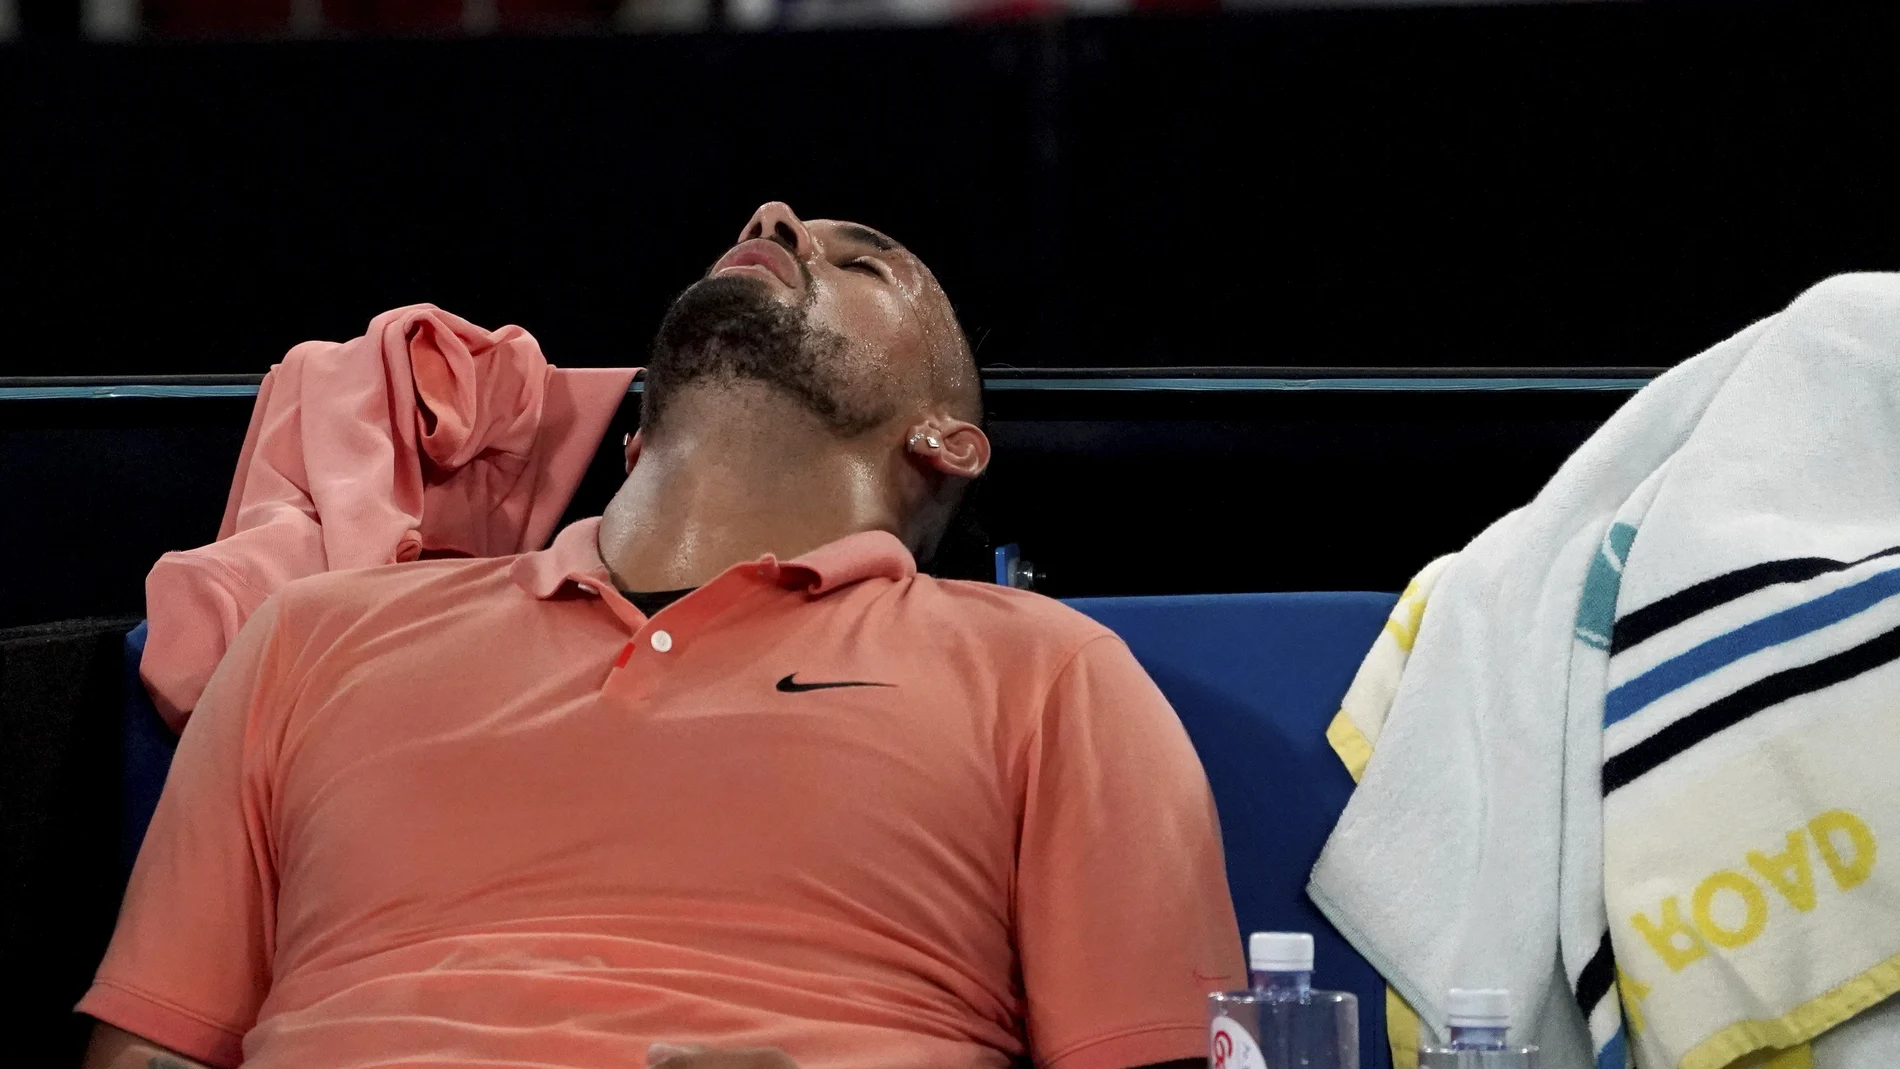 Nadal acabó agotado su partido de tercera ronda ante Khachanov